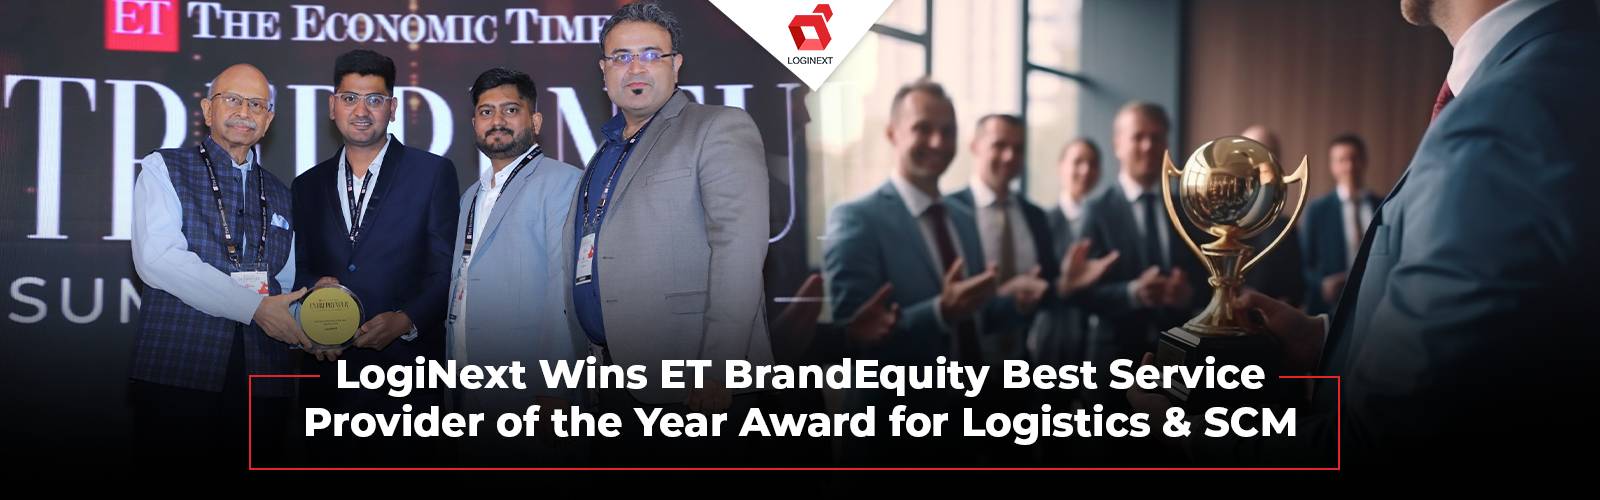 LogiNext, Lojistik ve SCM Hizmeti Alanında ET BrandEquity Ödülünü Kazandı